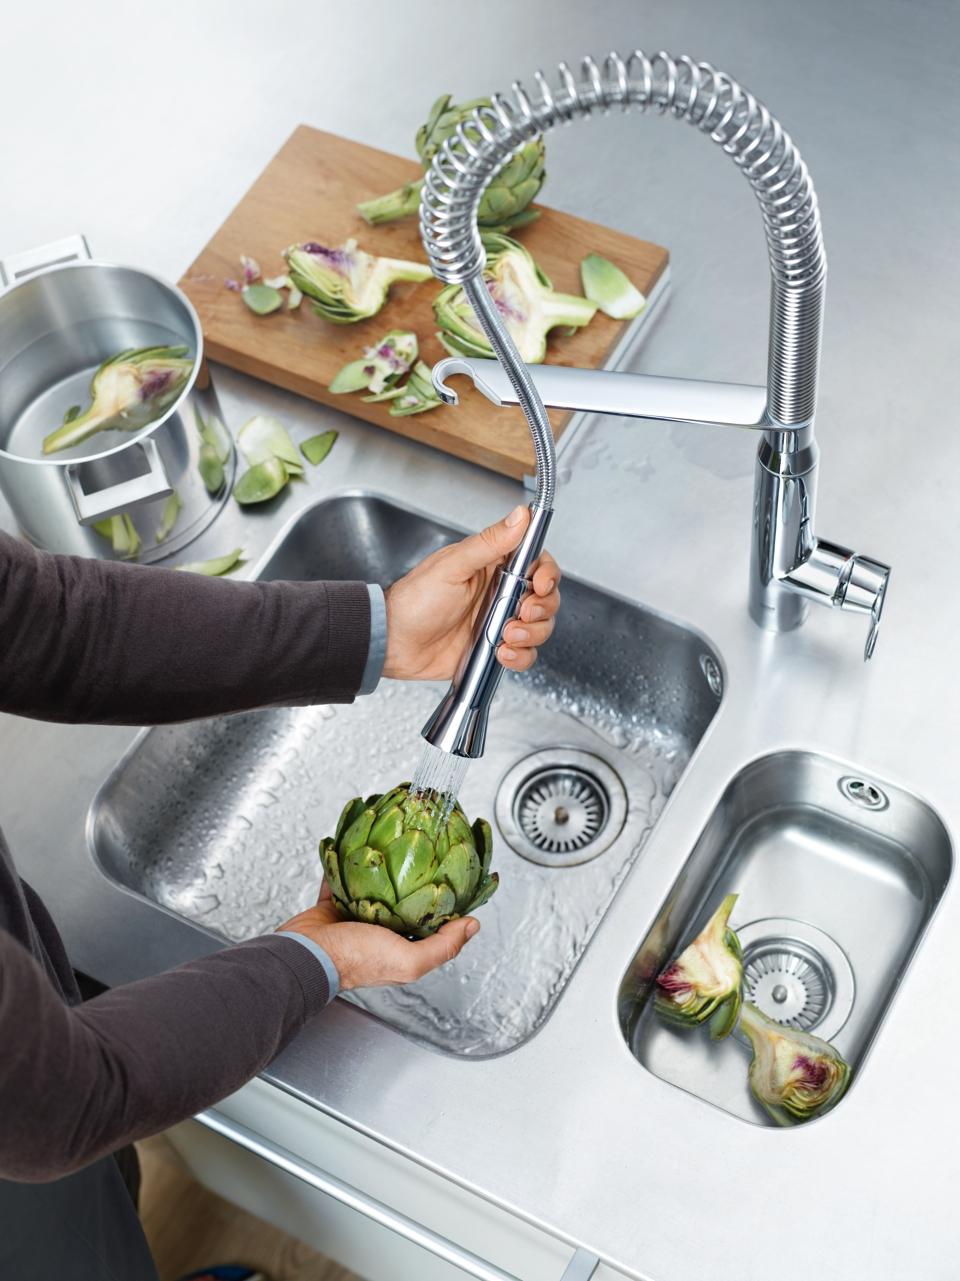 GROHE K7 robinet de cuisine en chrome avec douchette professionnelle pour un nettoyage facile des légumes